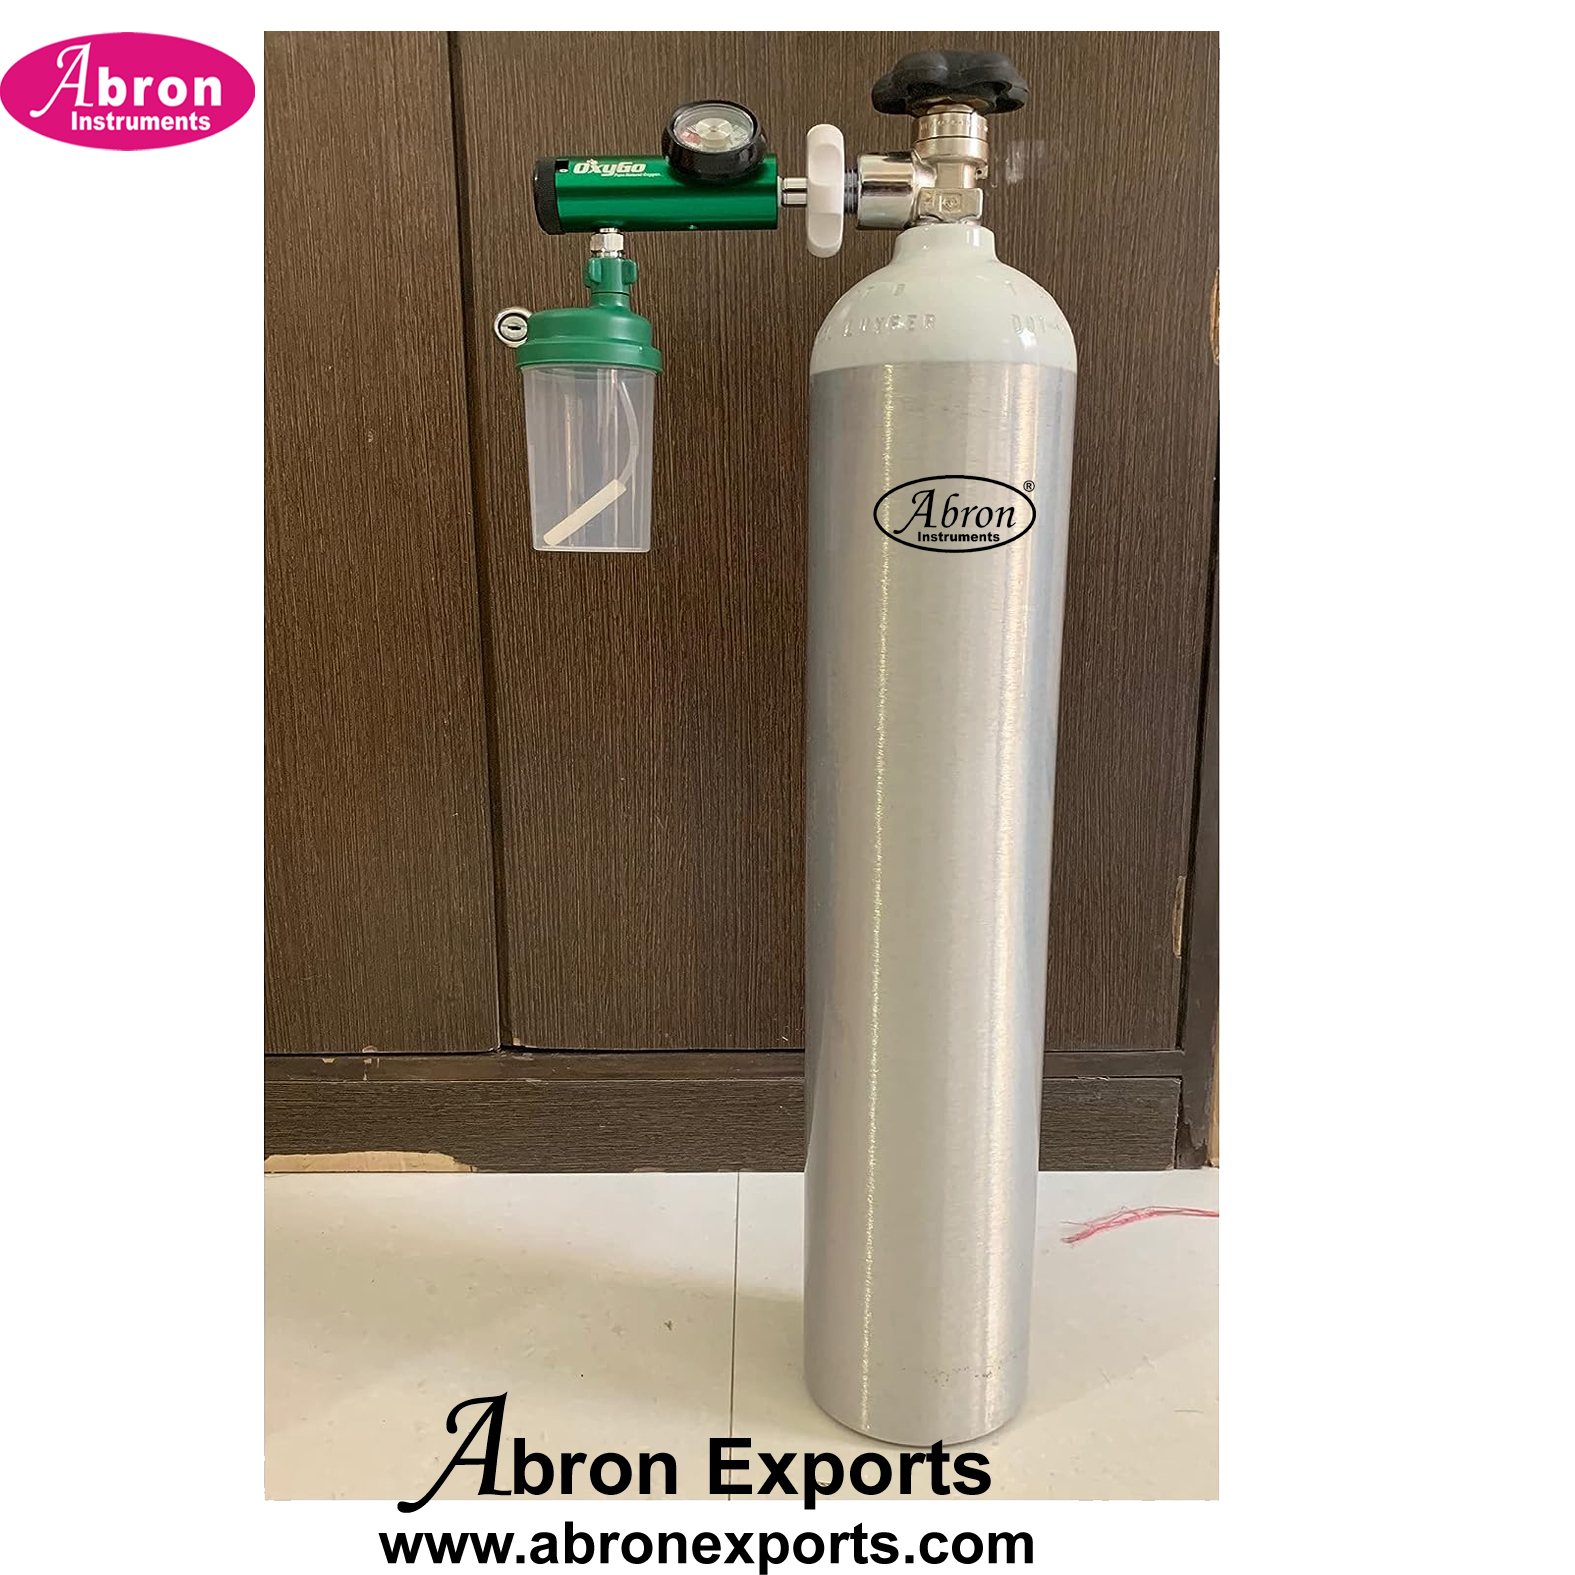  Oxygen Cylinder 675 liter 4.5kg  Ultra Light with Face Mask and Regulator Bottle Hospital Medical Abron ABM-2360L6H